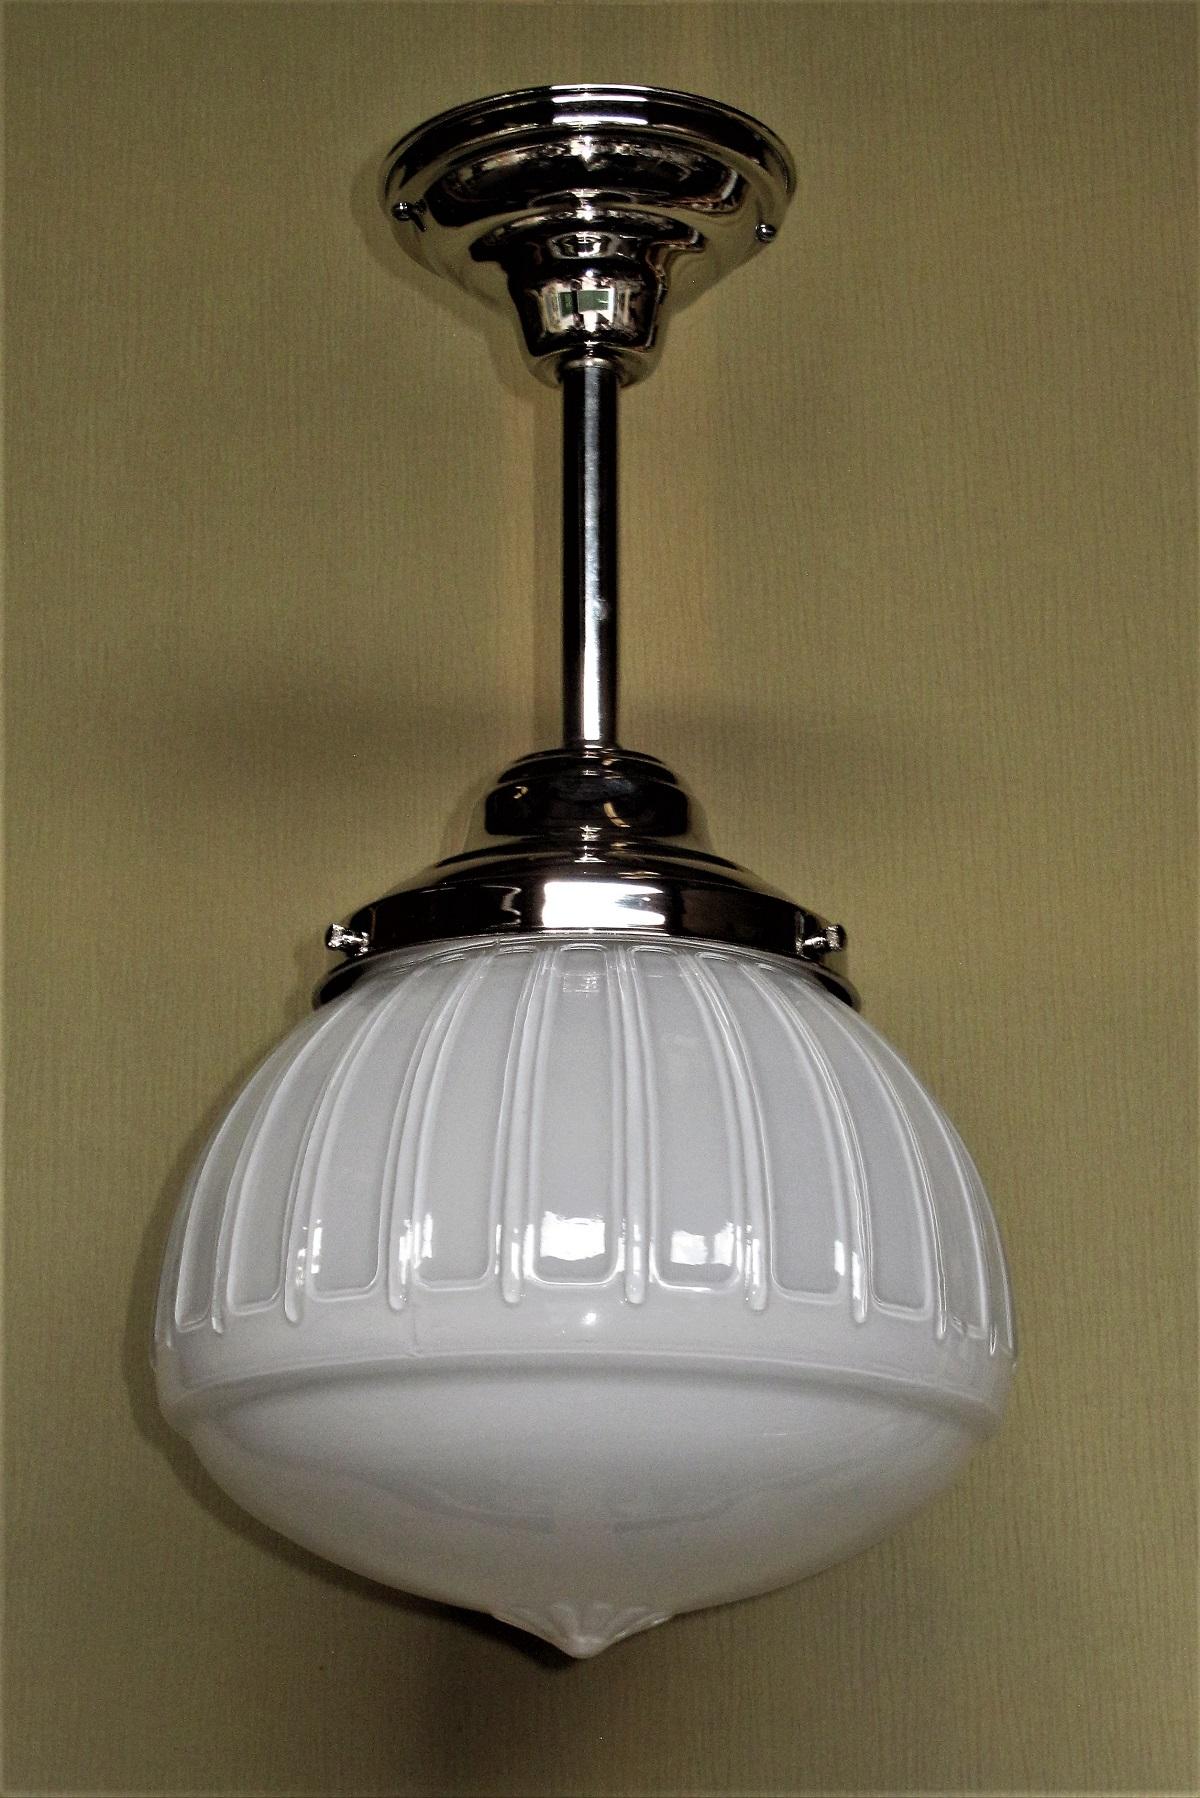 1920s kitchen light fixtures